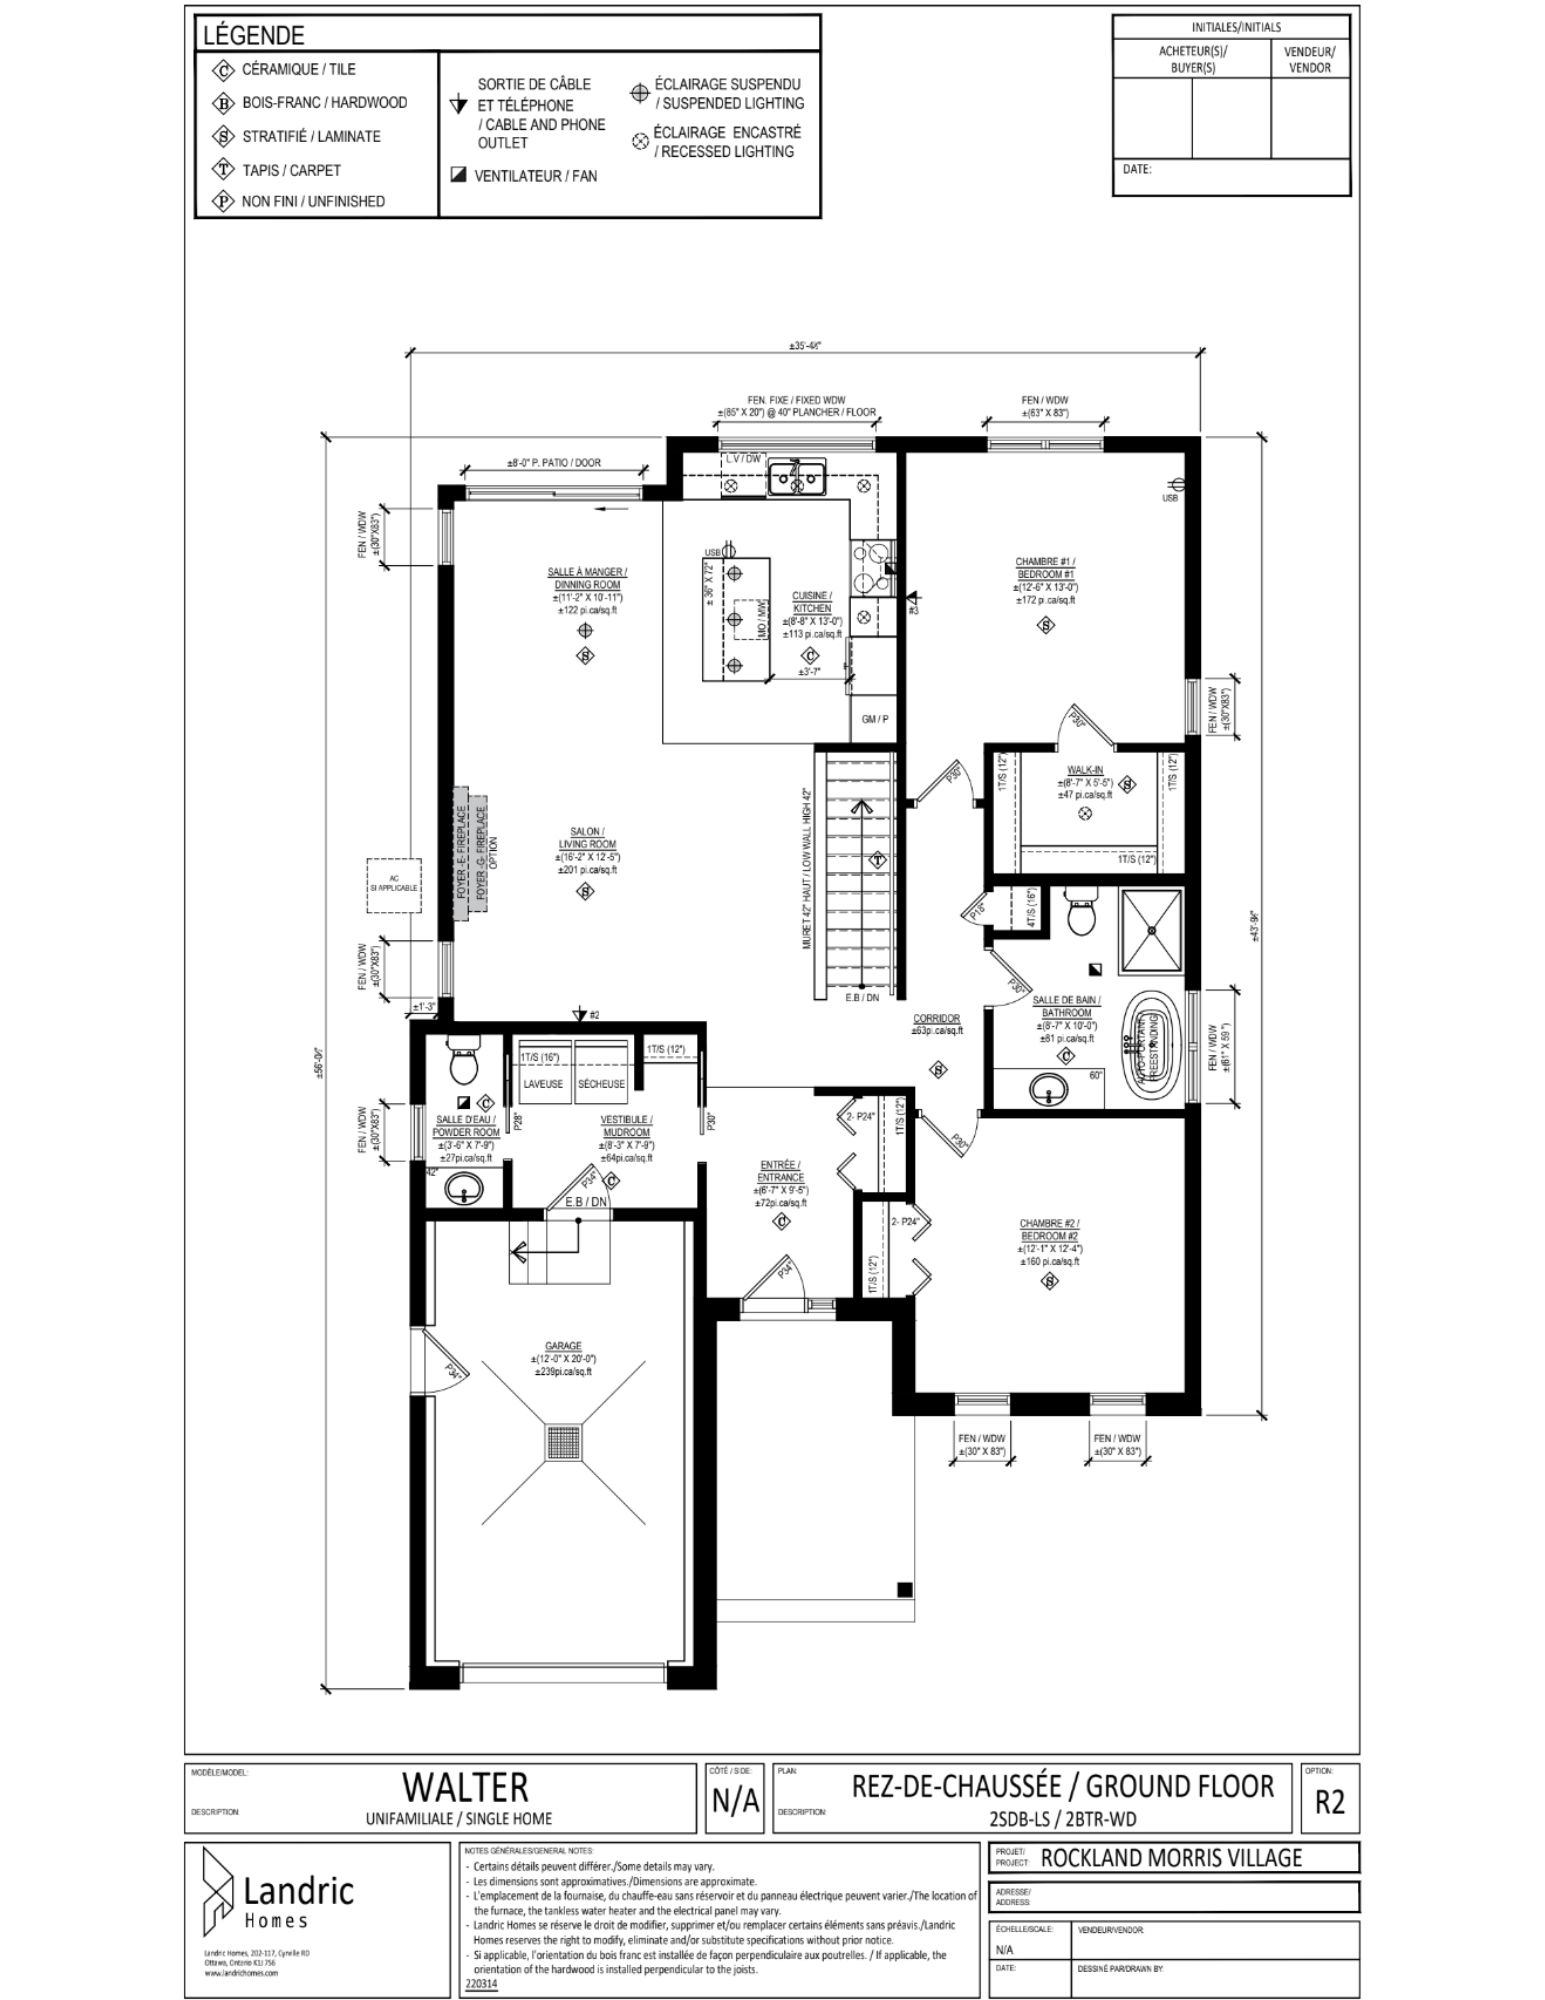 Beaumont, Morris Village floor plans (24)